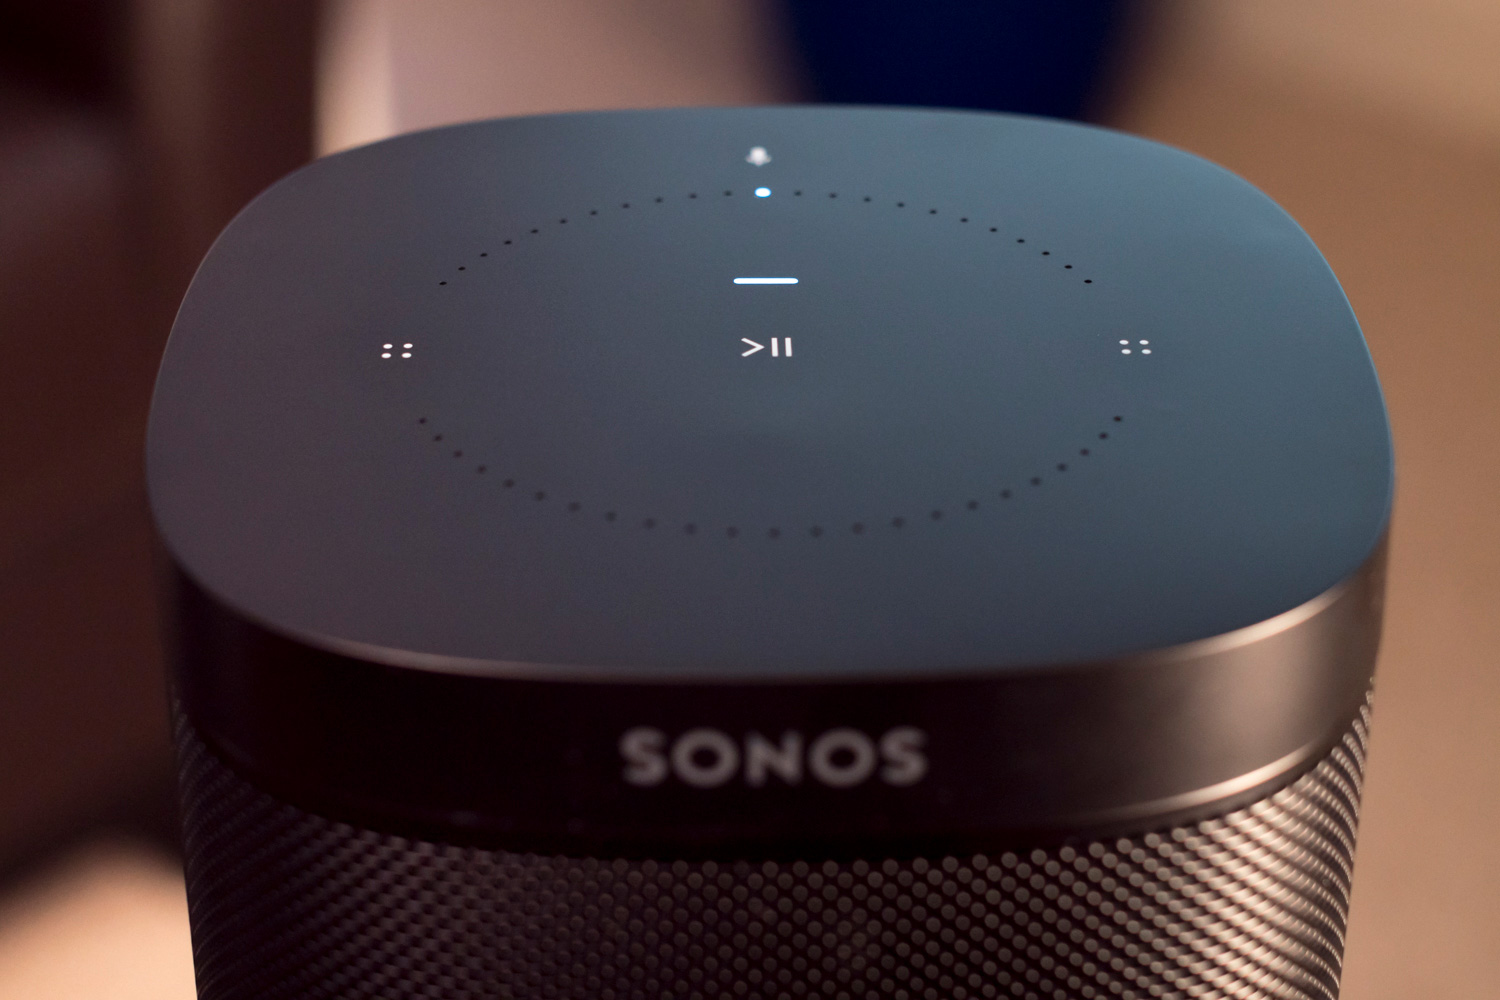 Fremskridt klasselærer instruktør Sonos Voice Control hands-off review: Now we're talking | Digital Trends